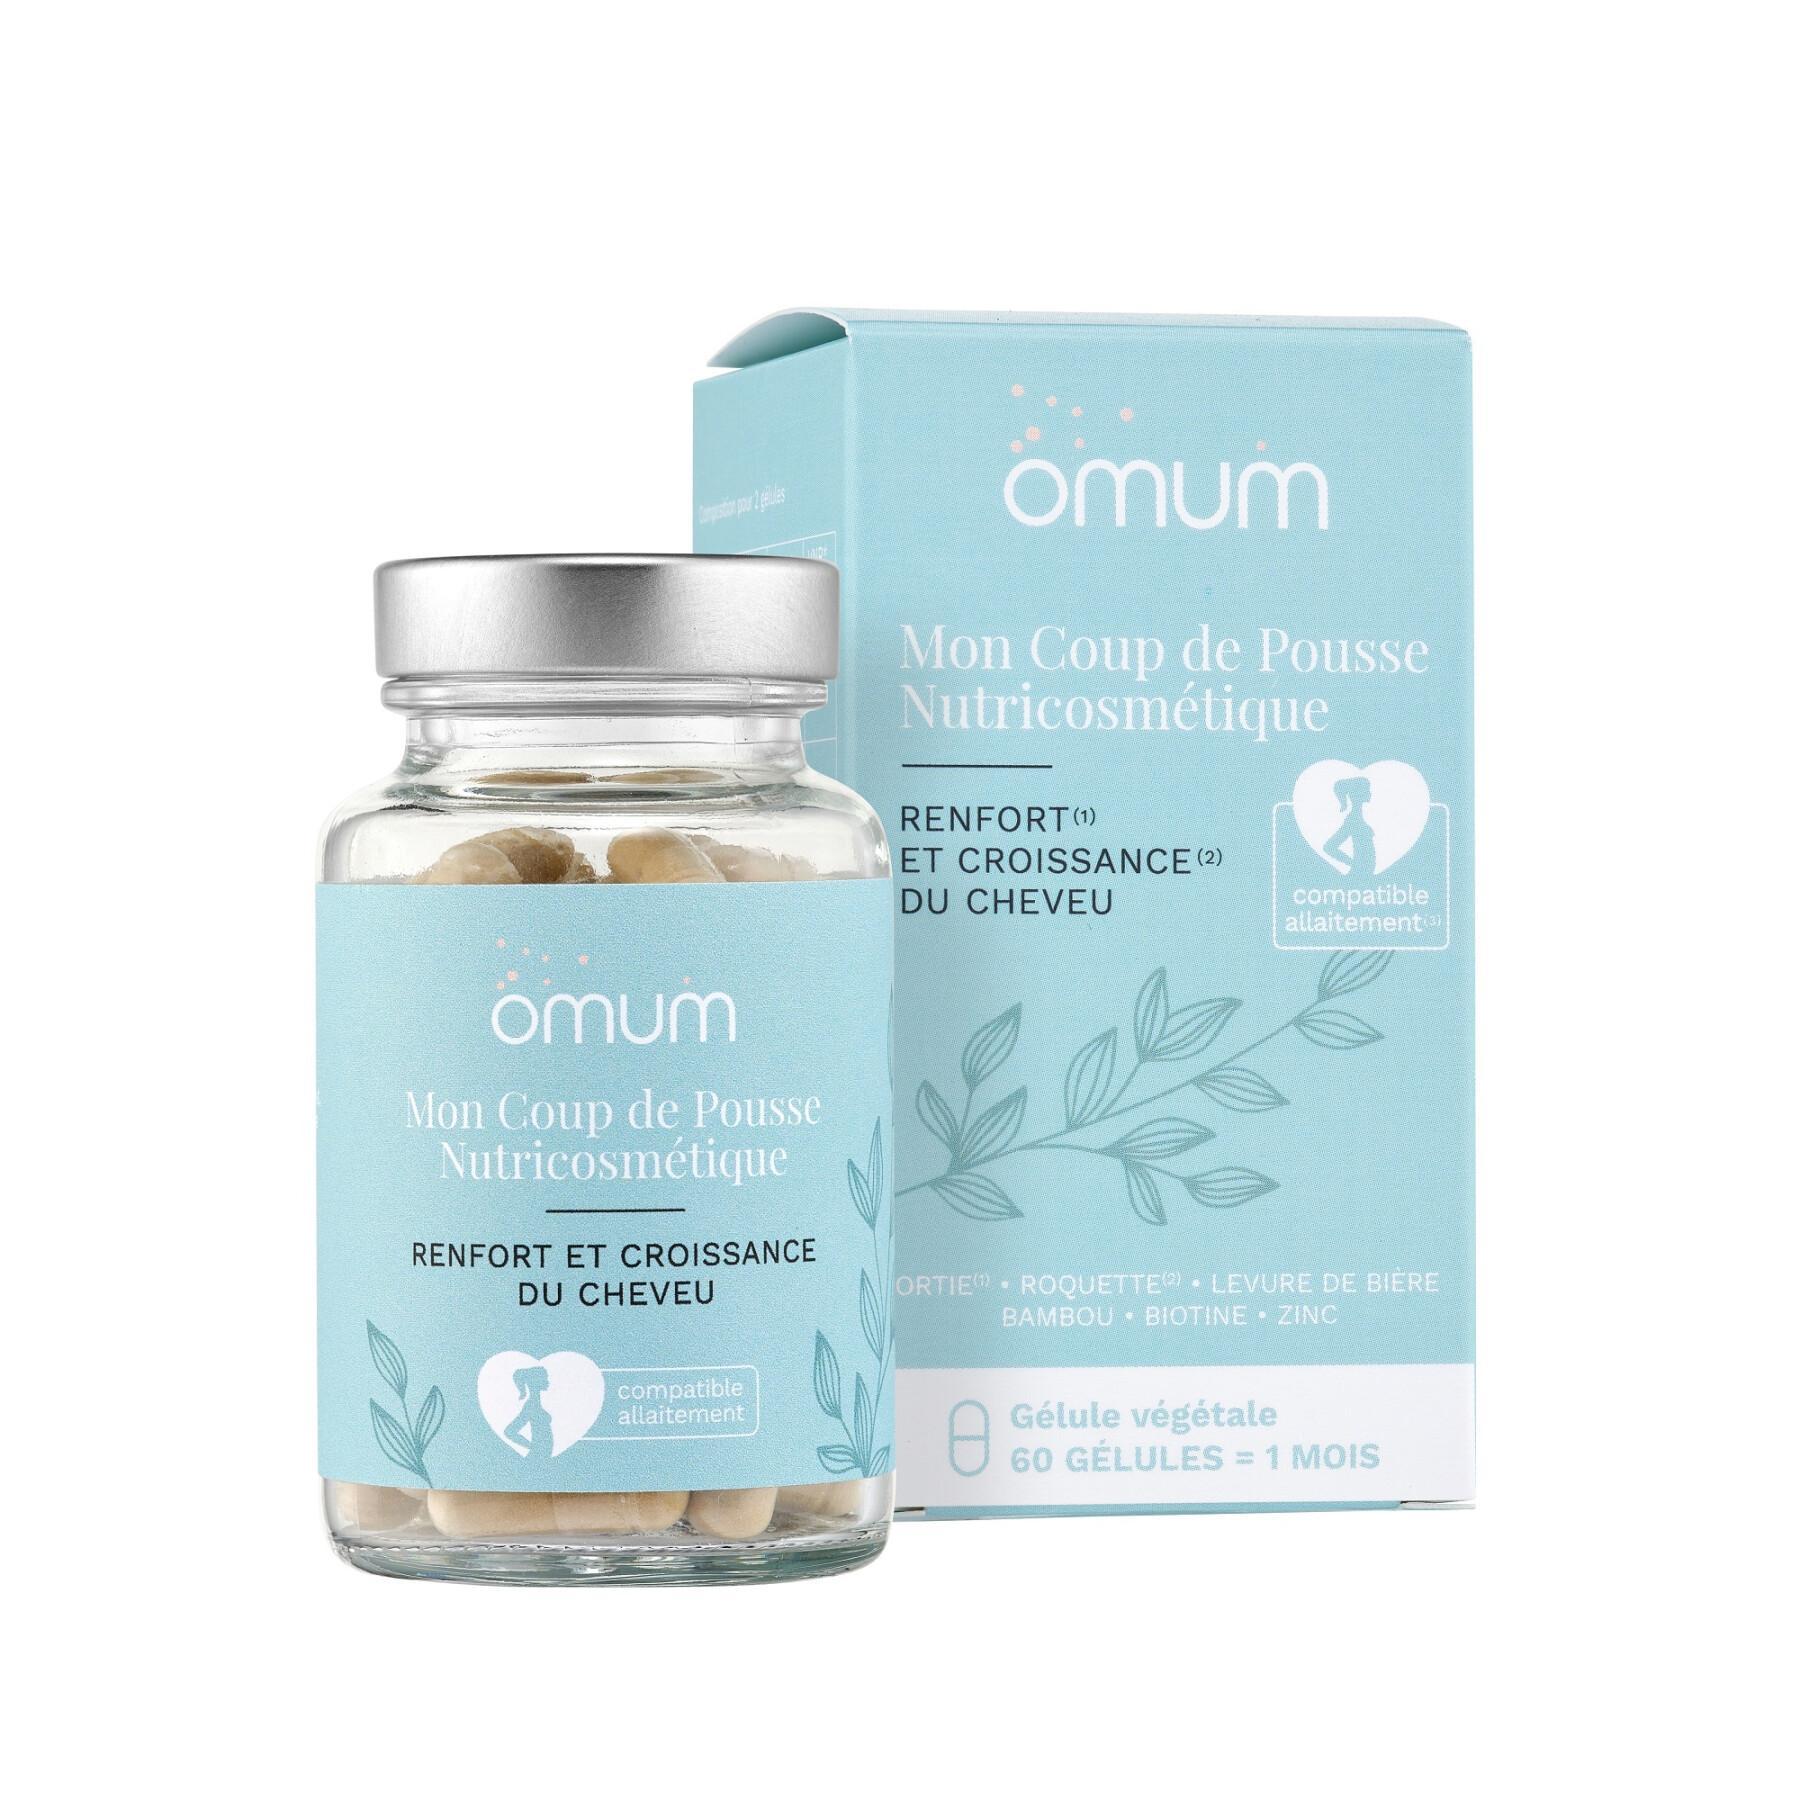 Food supplement for women Omum New Nutricosmetique Mon Coup de Pousse